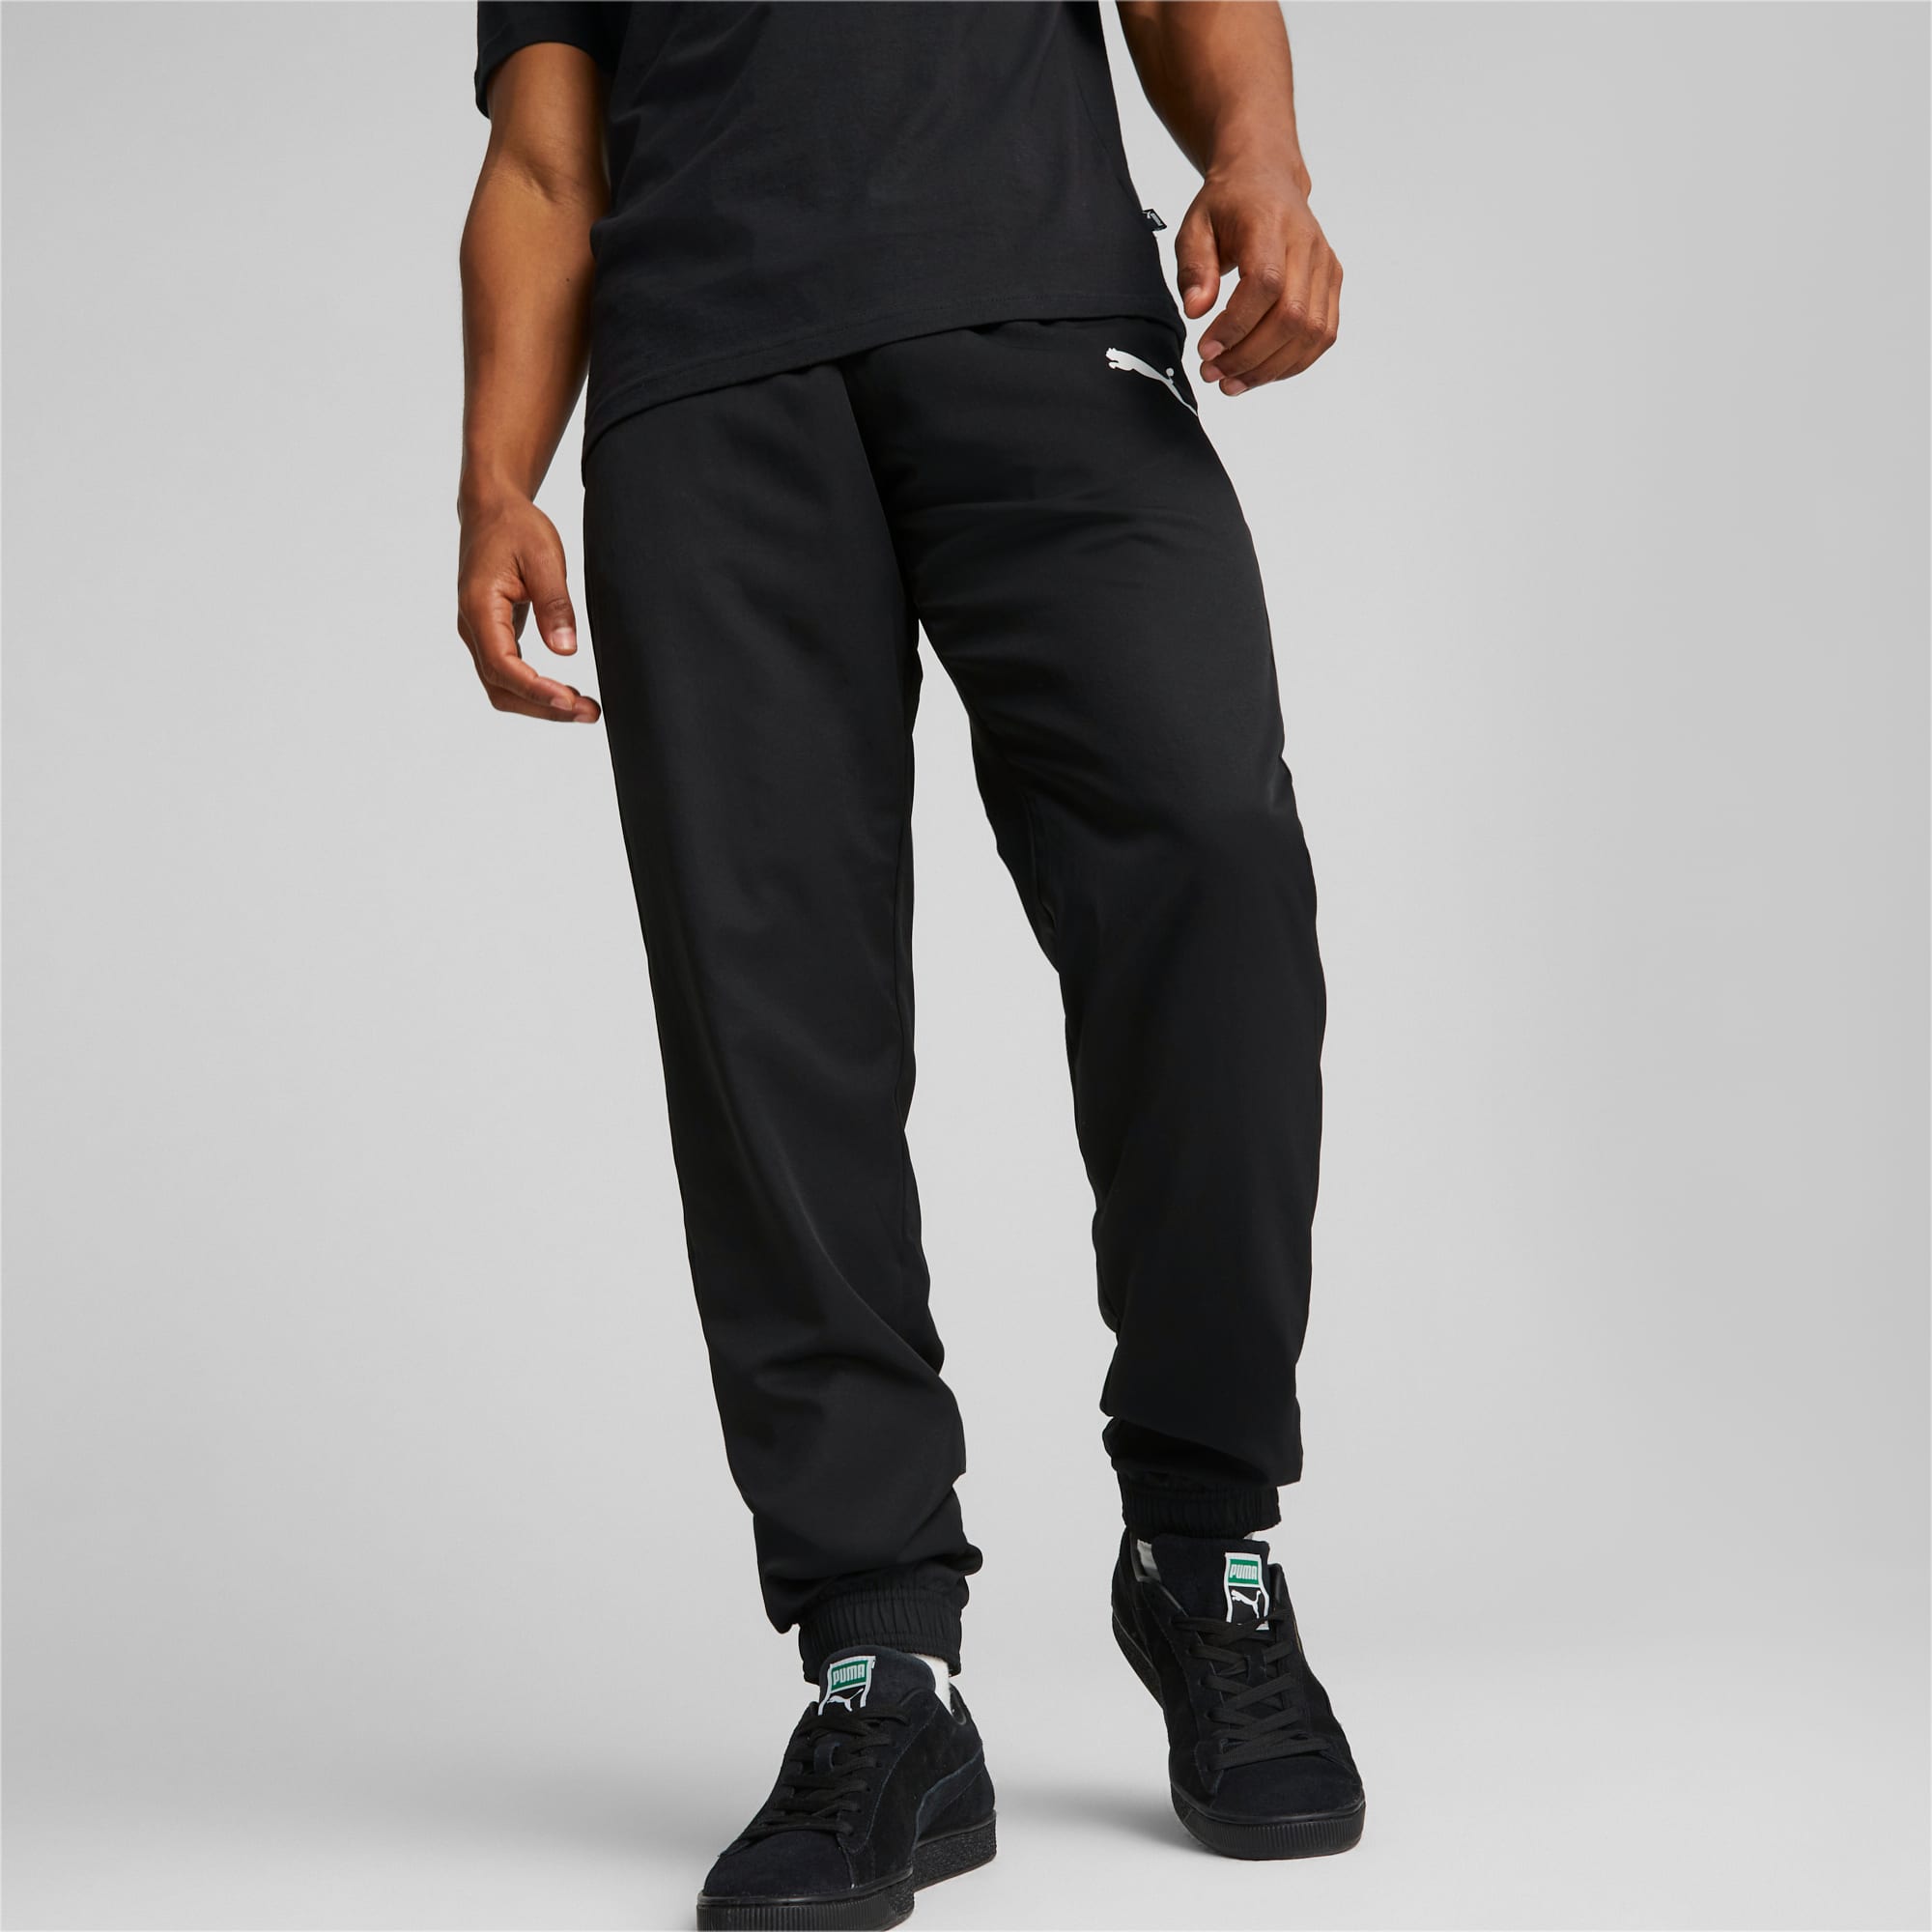 PUMA Active Woven Men's Pants, Black, Size 3XL, Clothing